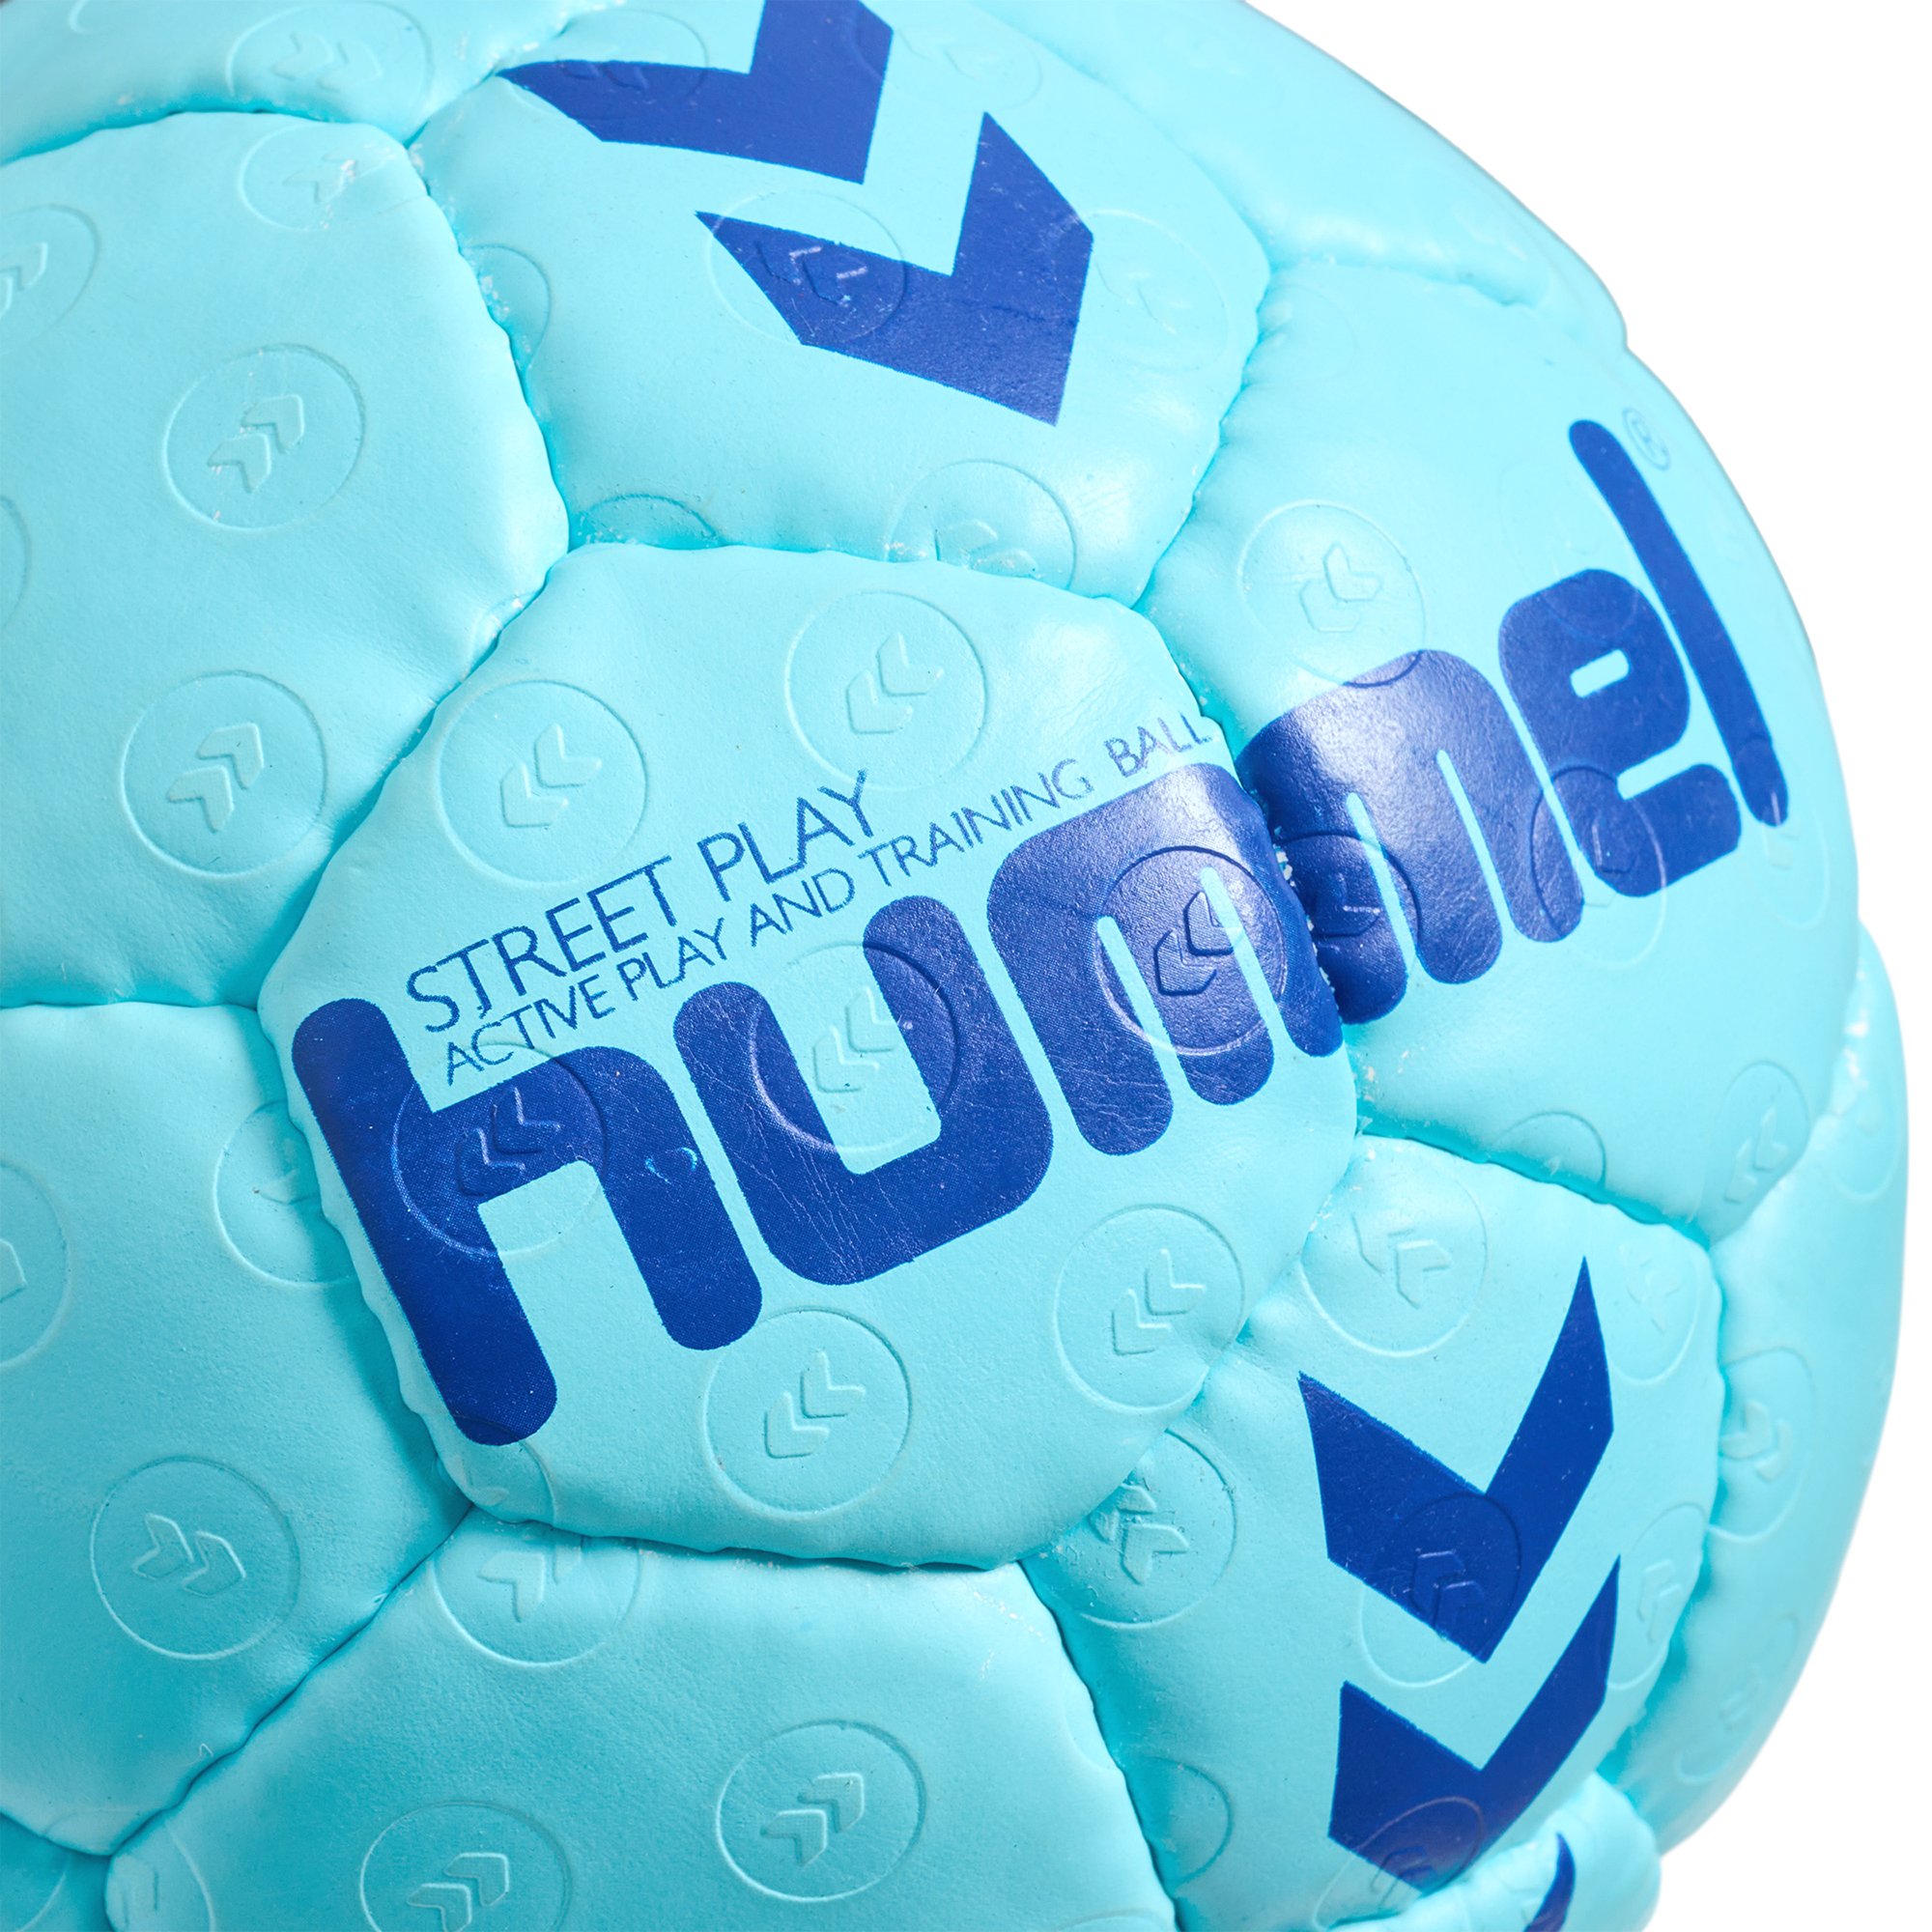 - Handball Street Play Handbälle Hummel